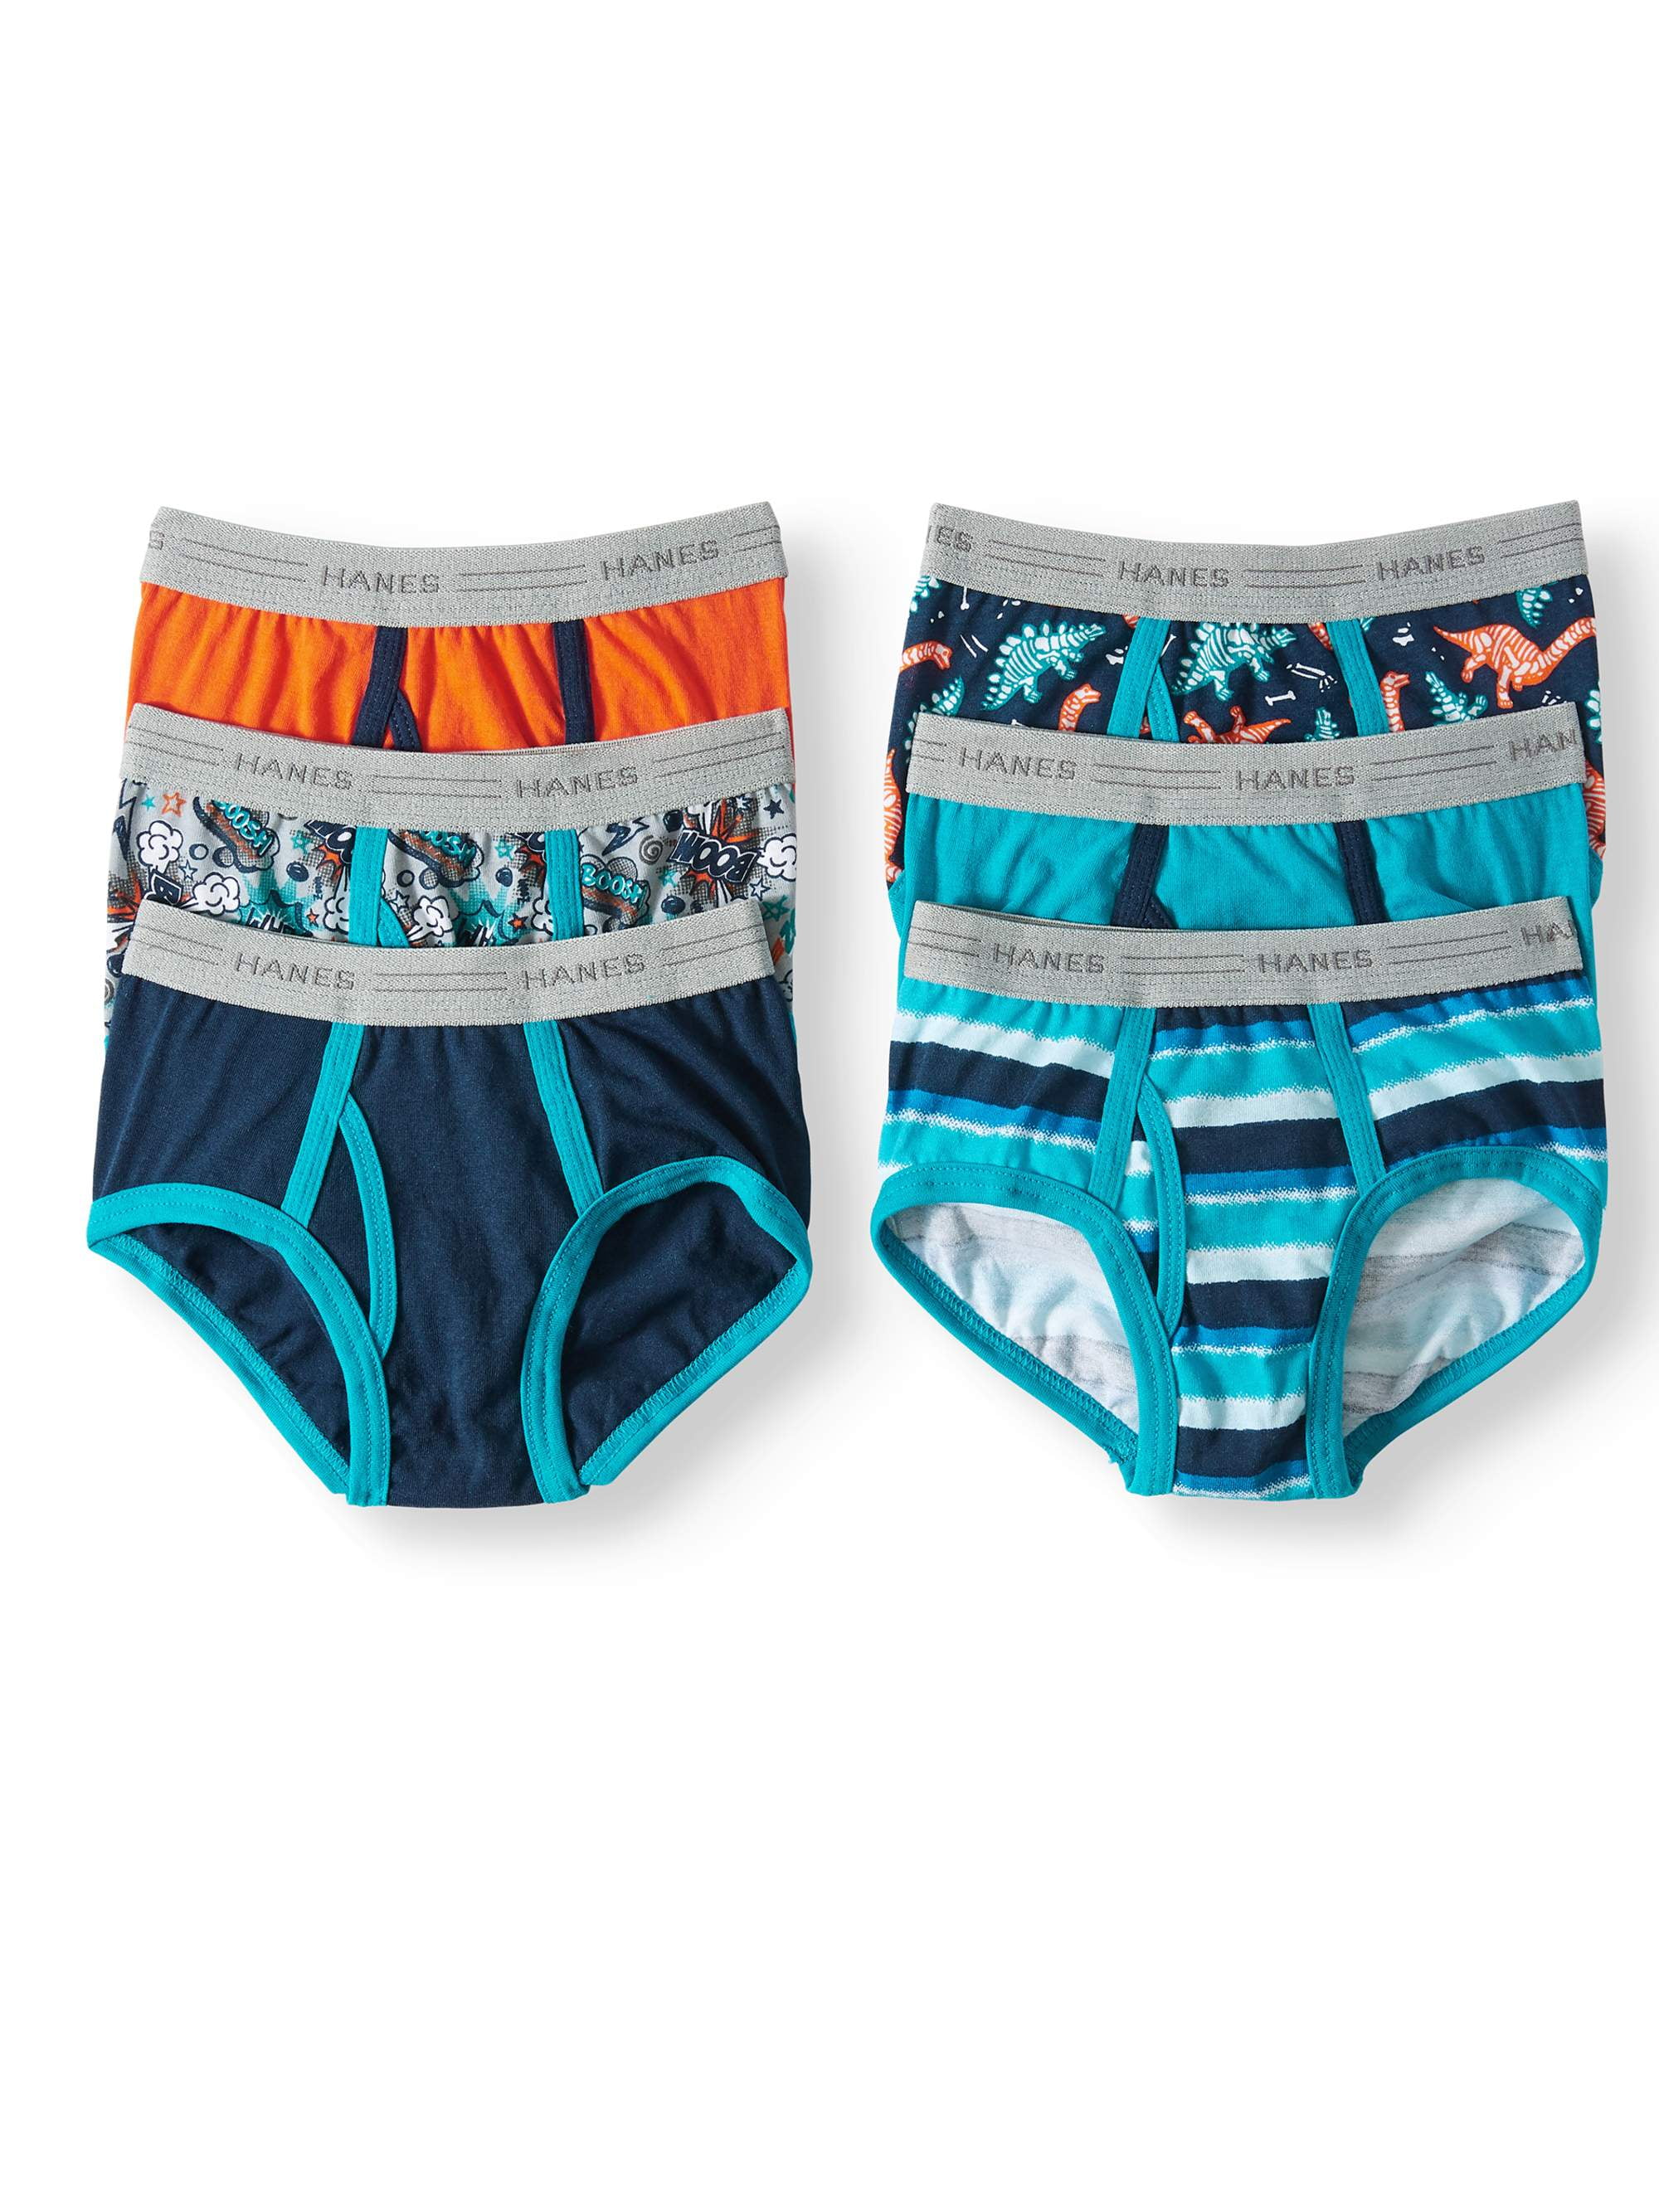 Hanes - Hanes EcoSmart Tagless Brief Underwear, 6 Pack (Toddler Boys